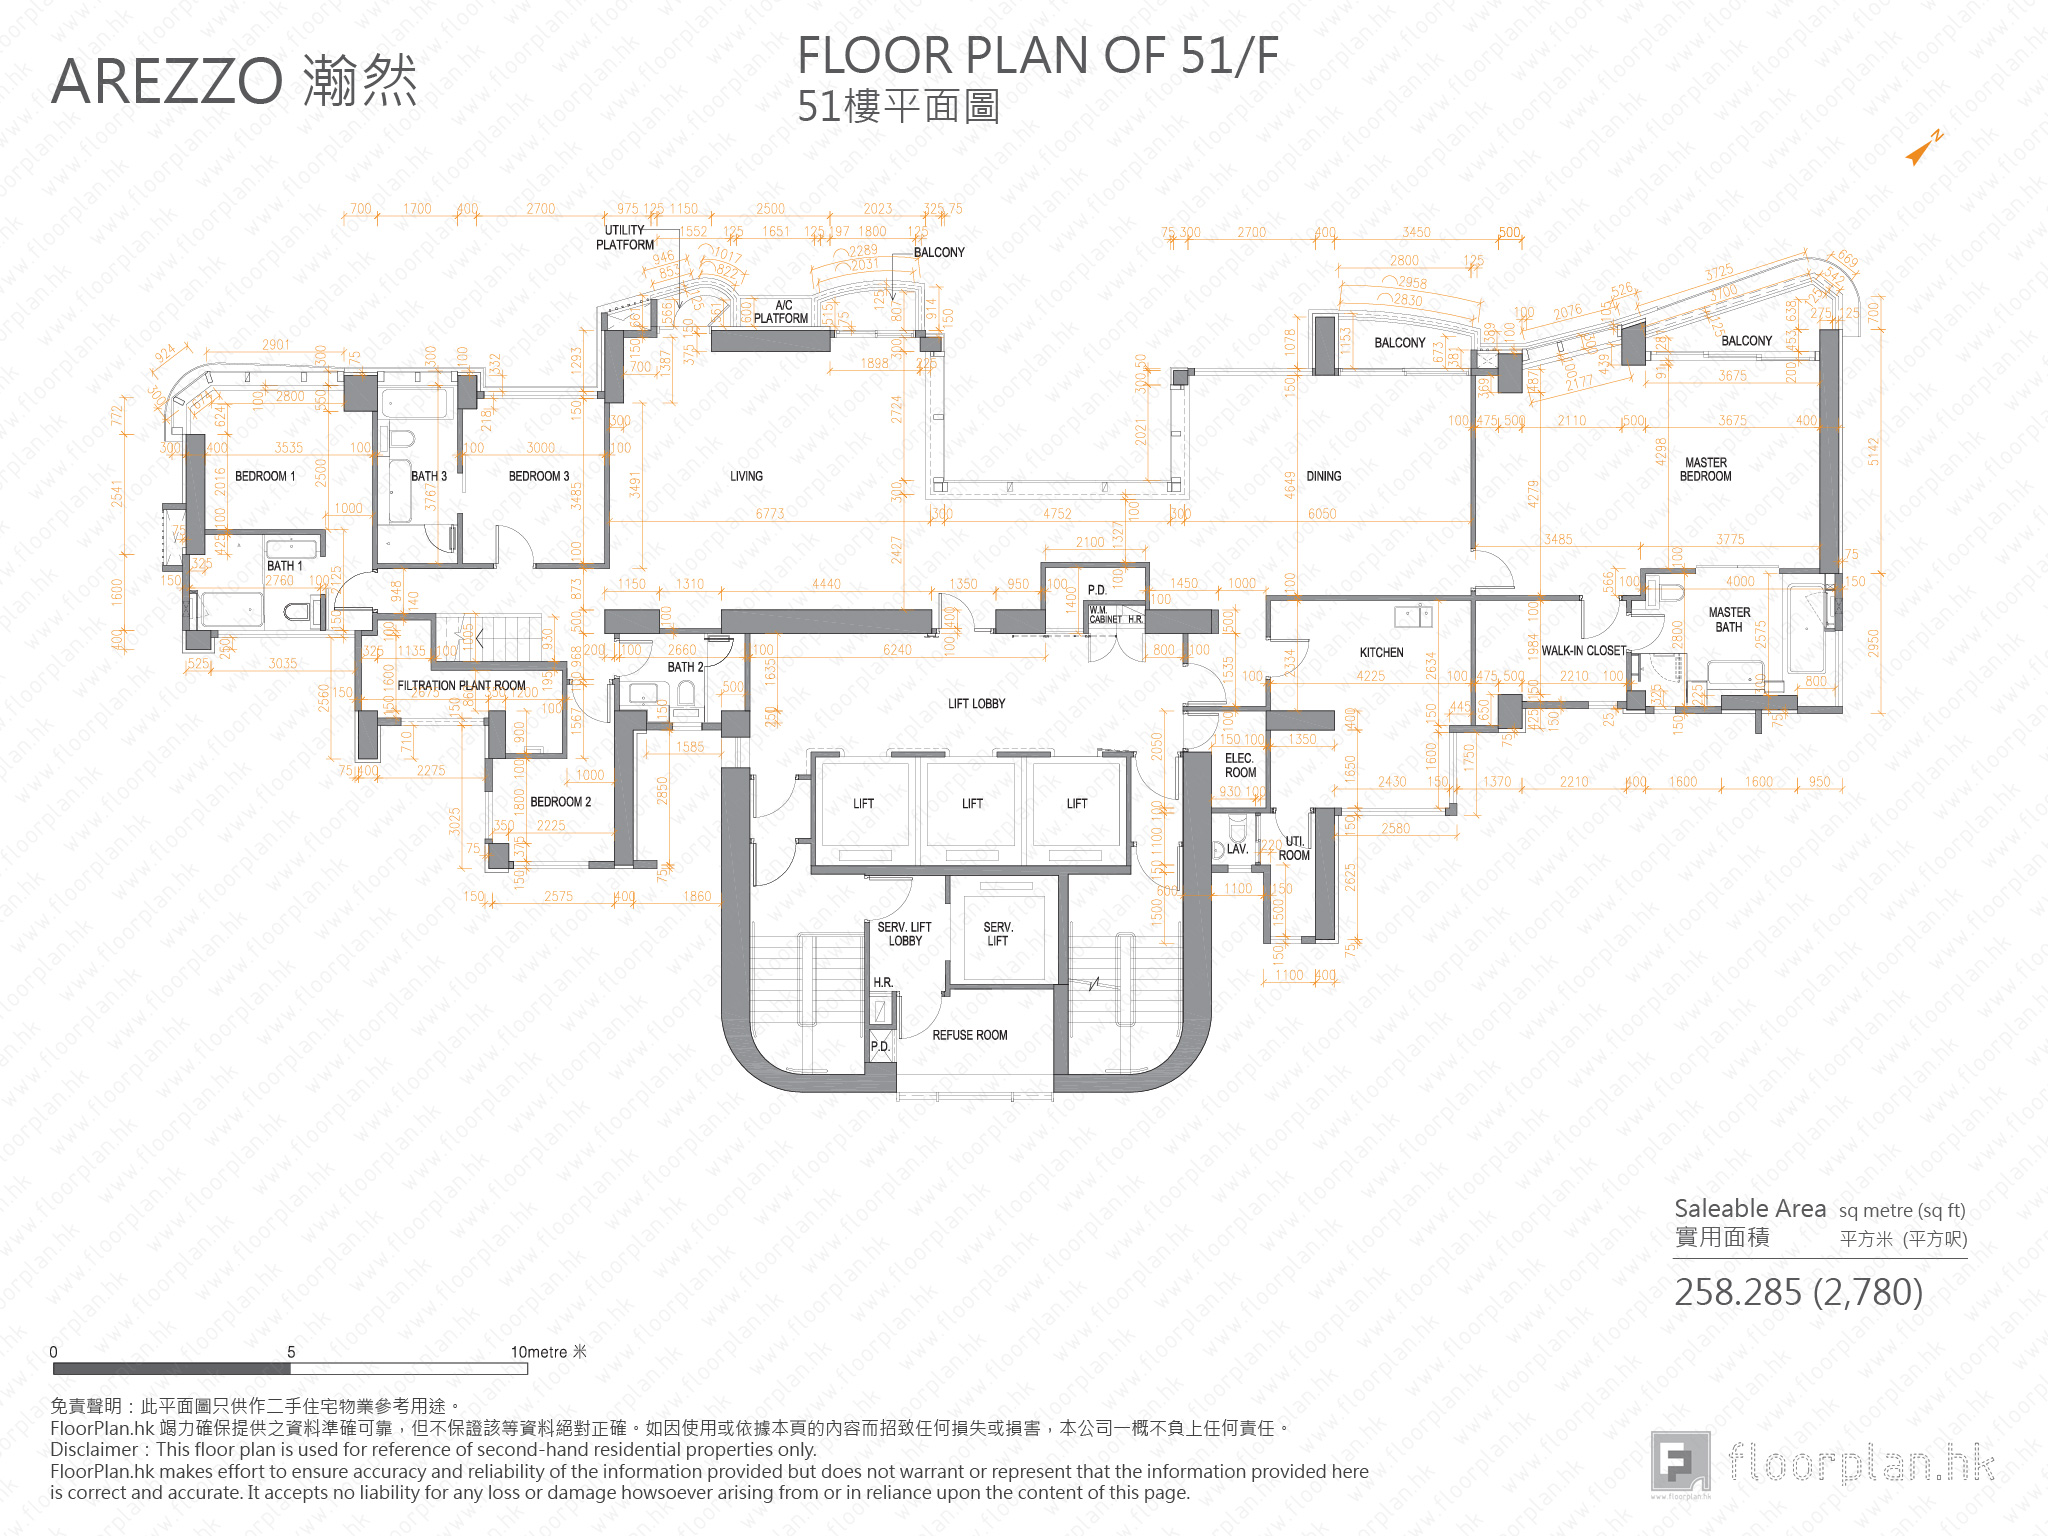 瀚然 平面圖 FloorPlan.hk